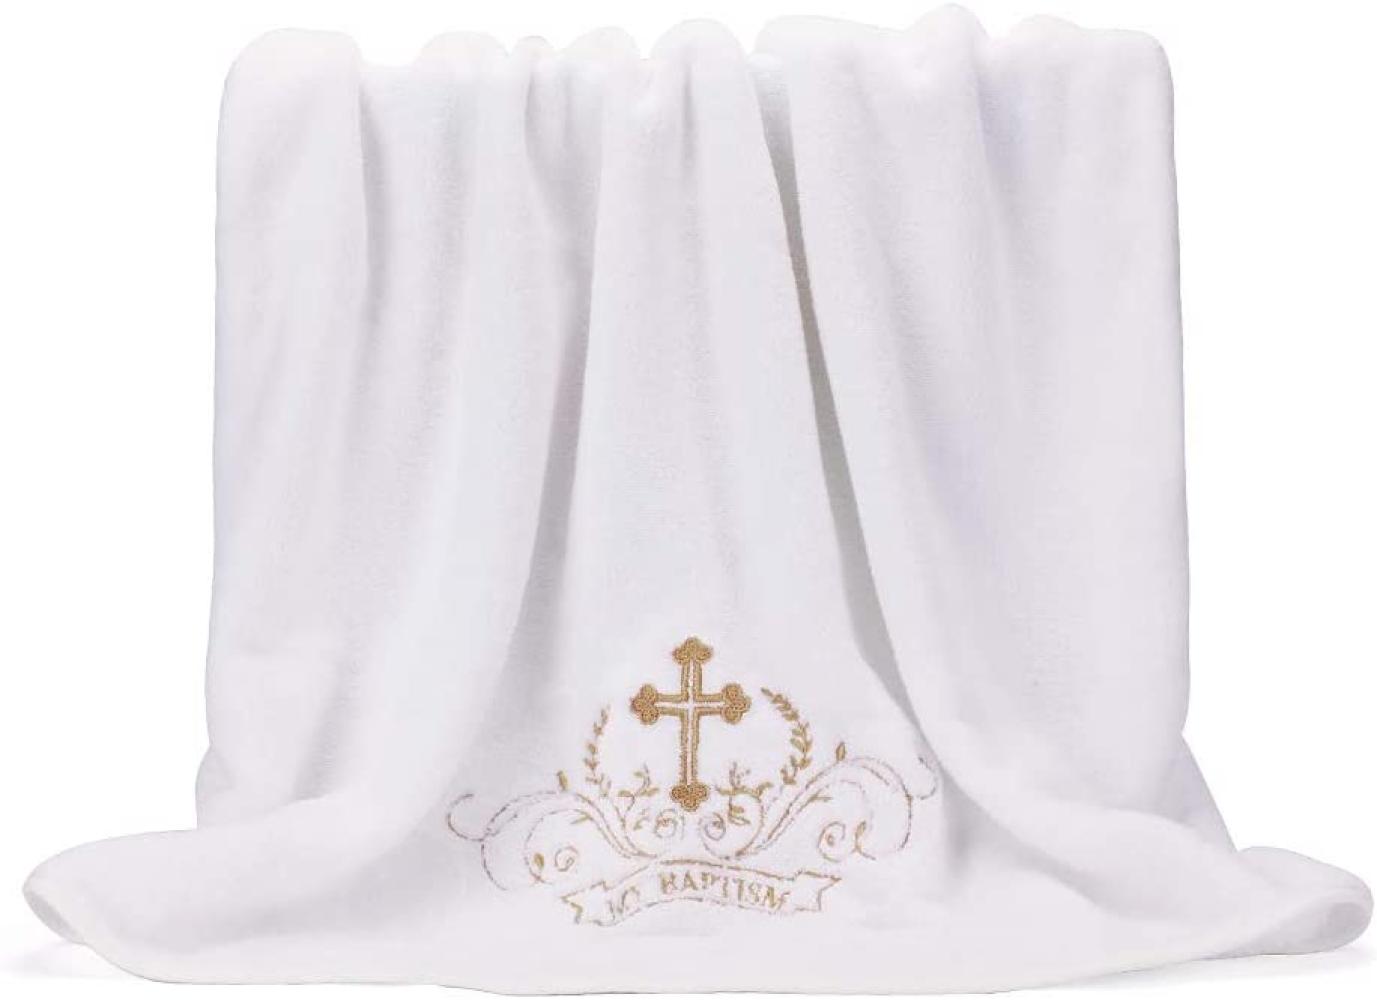 LACOFIA Taufe Handtuch Unisex Baby Taufe Decke, Weiß mit Gold Stickerei Kreuz, Personalisierte Geschenke für Jungen oder Mädchen, Volle Badetuch Größe 150 * 75 CM Bild 1